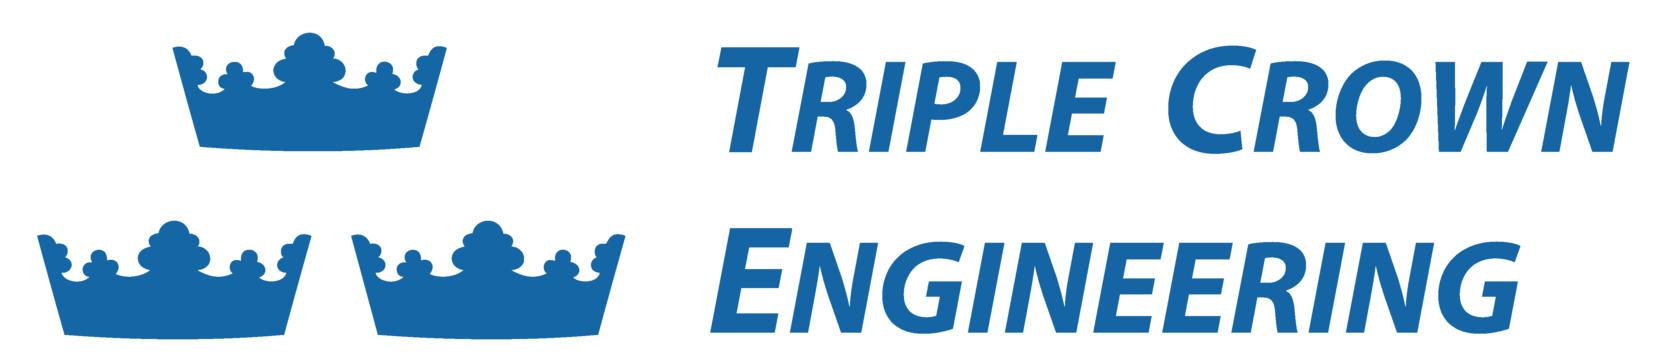 Triple Crown Engineering